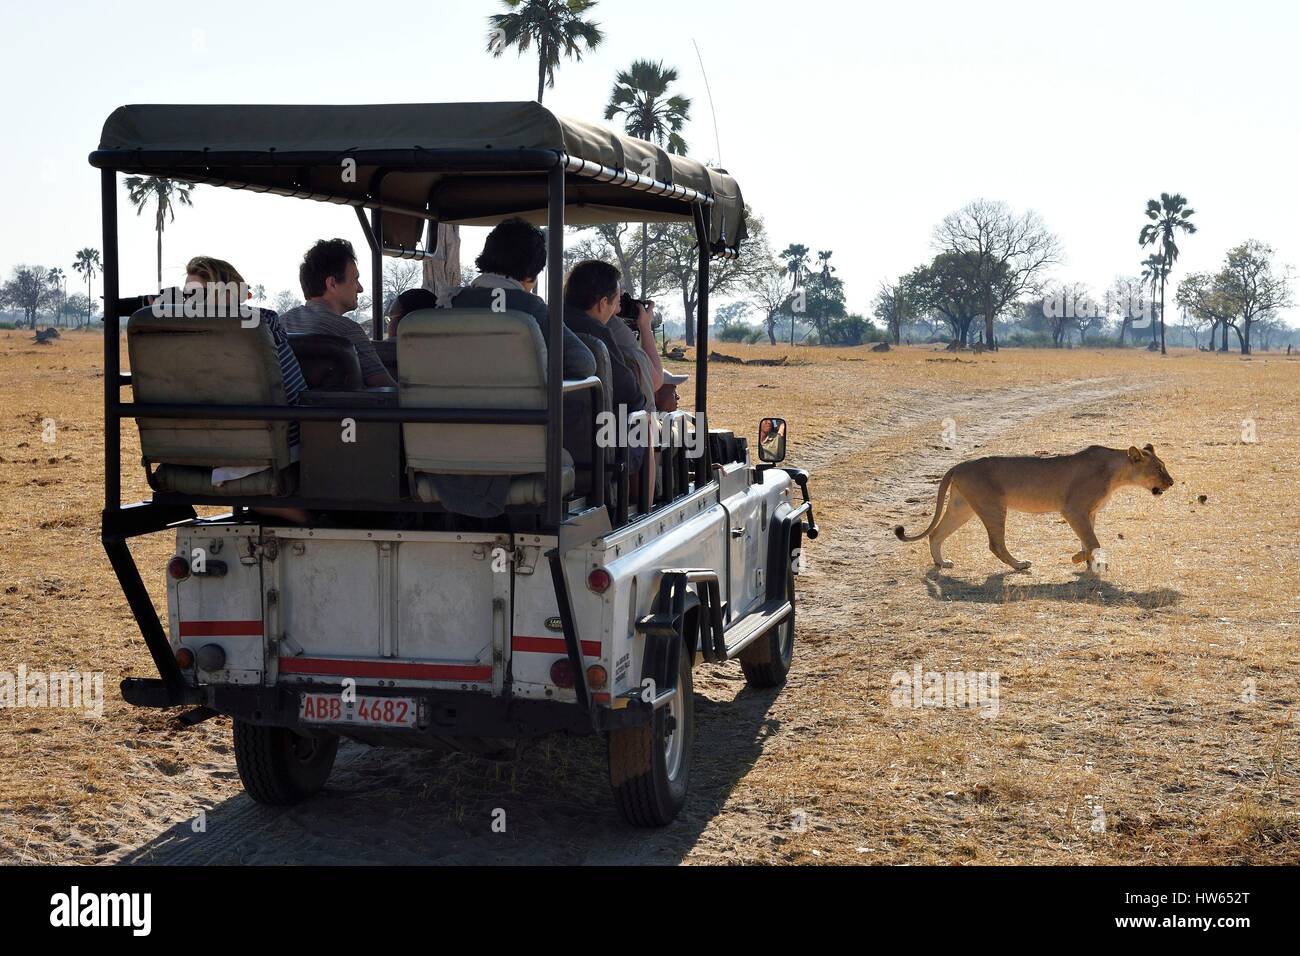 Le Zimbabwe, département, parc national de Hwange, touristes dans un quatre-roues motrices regarder un lion (Panthera leo) Banque D'Images